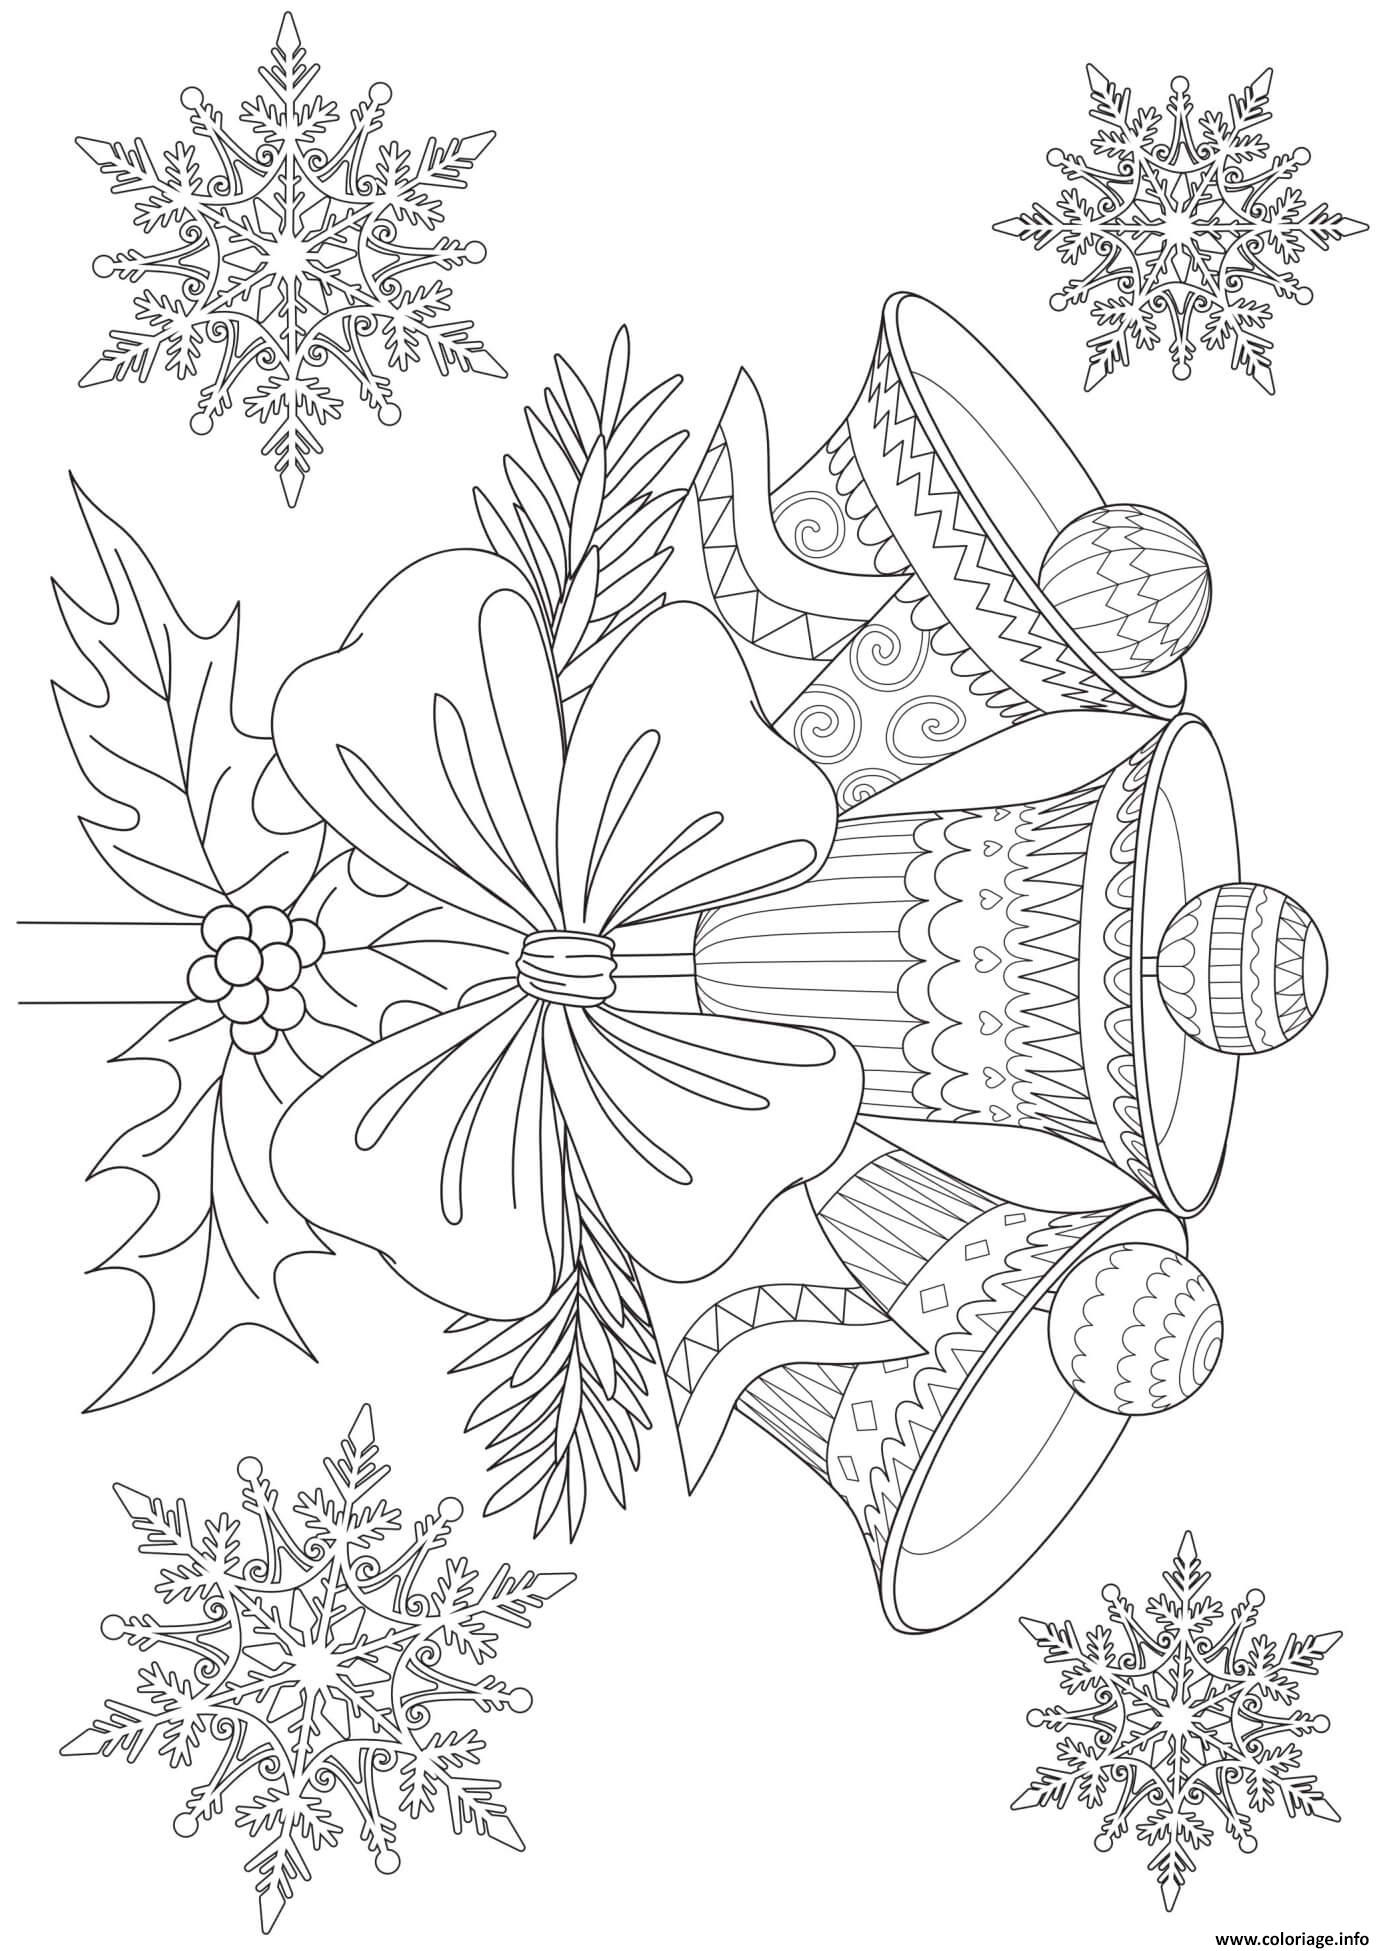 Coloriage Cloches De Noel Mandala Adulte Zentangle Dessin Noel Adulte À concernant Imprimer Des Coloriages